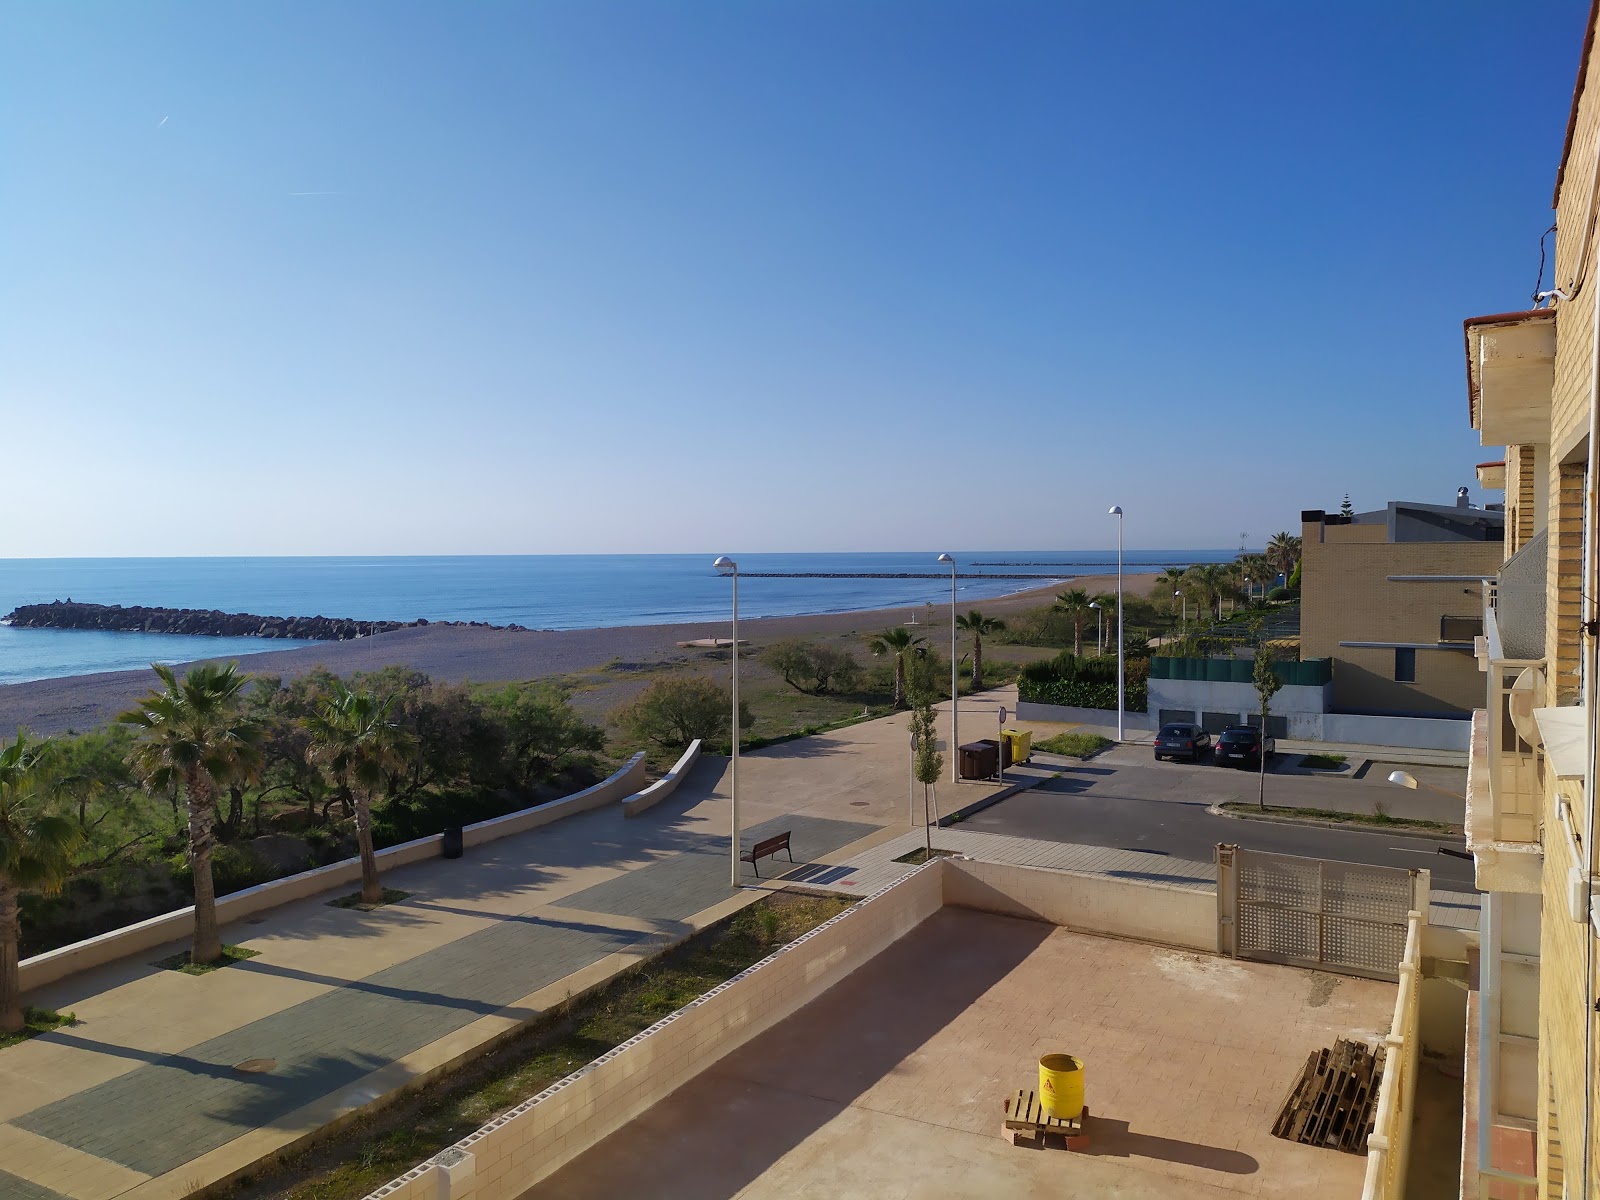 Puig Plajı'in fotoğrafı mavi sular yüzey ile